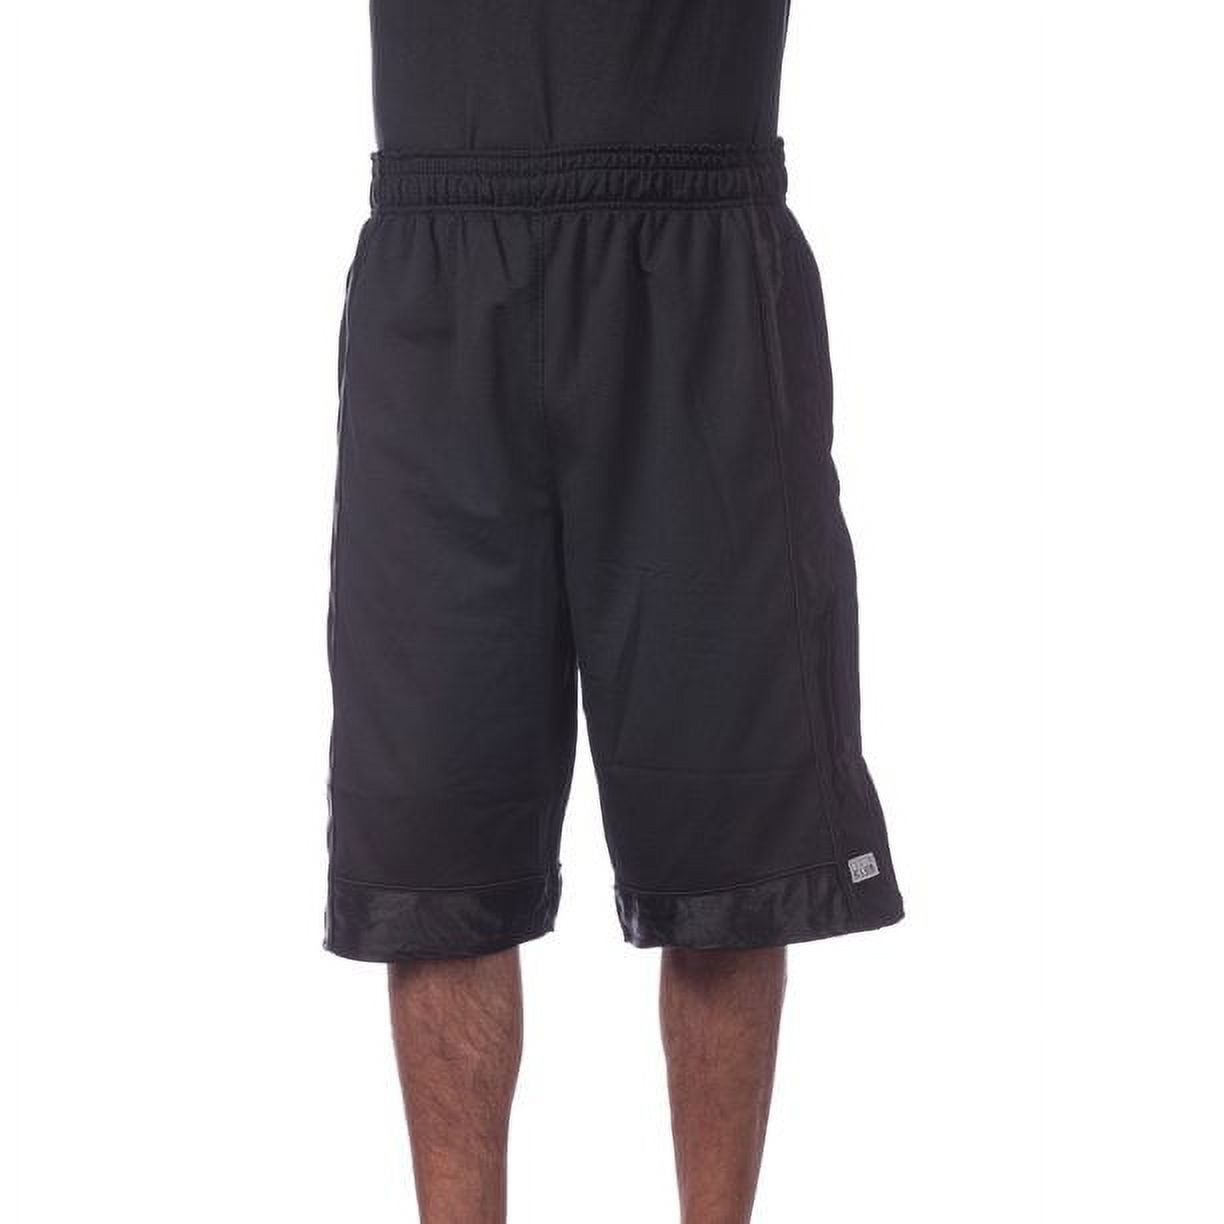 Men's Black/Gold Beast Mode Varsity Basketball Shorts